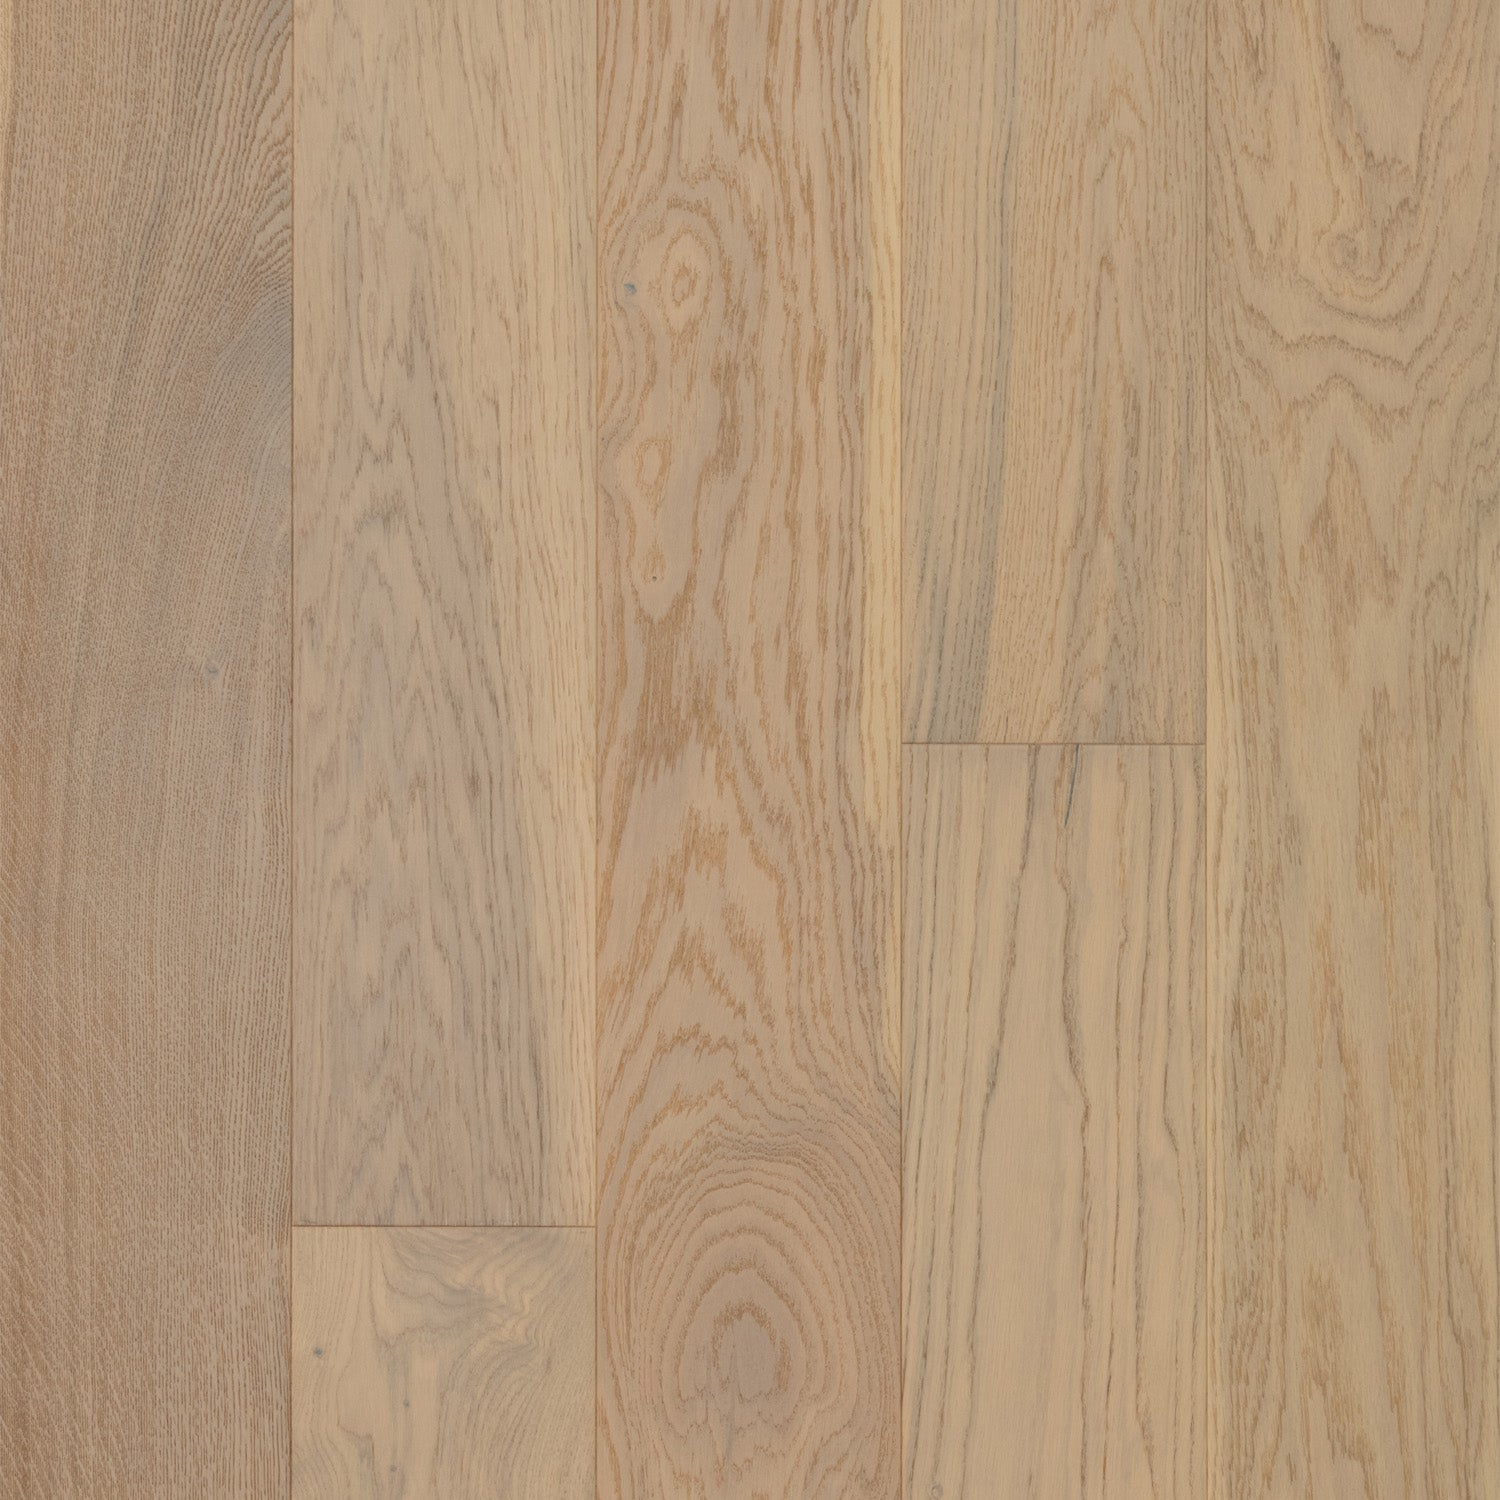 Marbella 7.5mm Timber Flooring